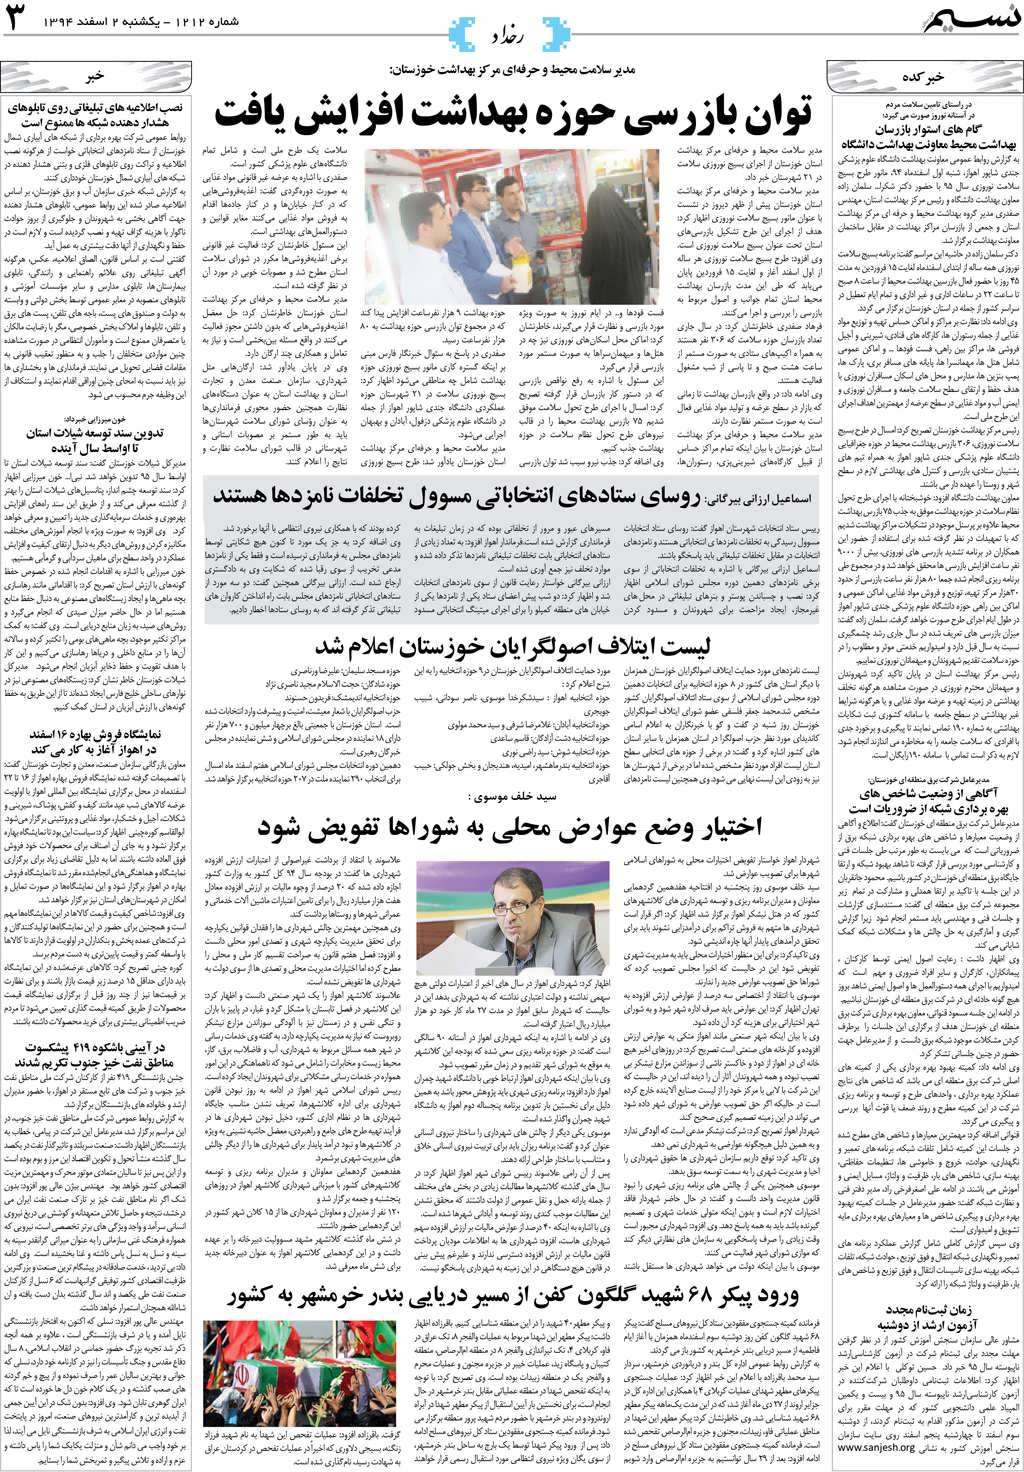 صفحه رخداد روزنامه نسیم شماره 1212